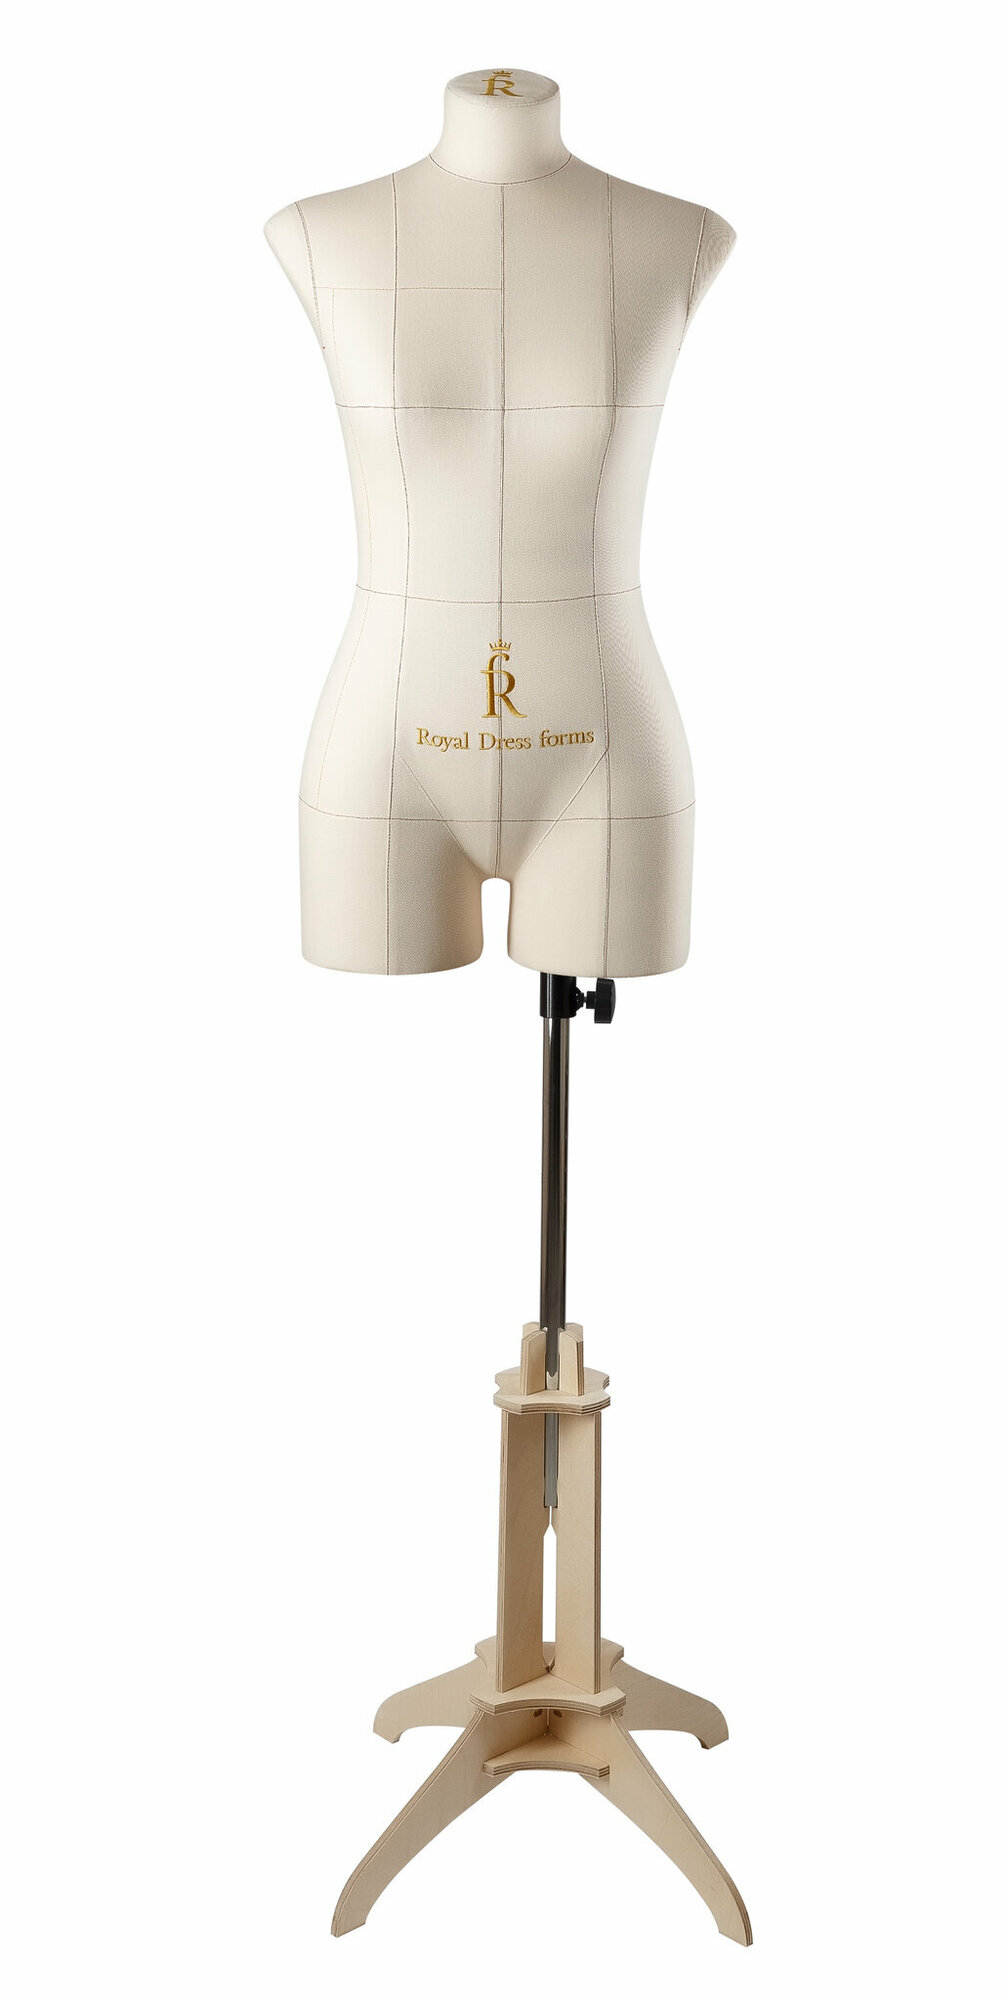 Подставка для манекена Royal Dress forms «Кантри».